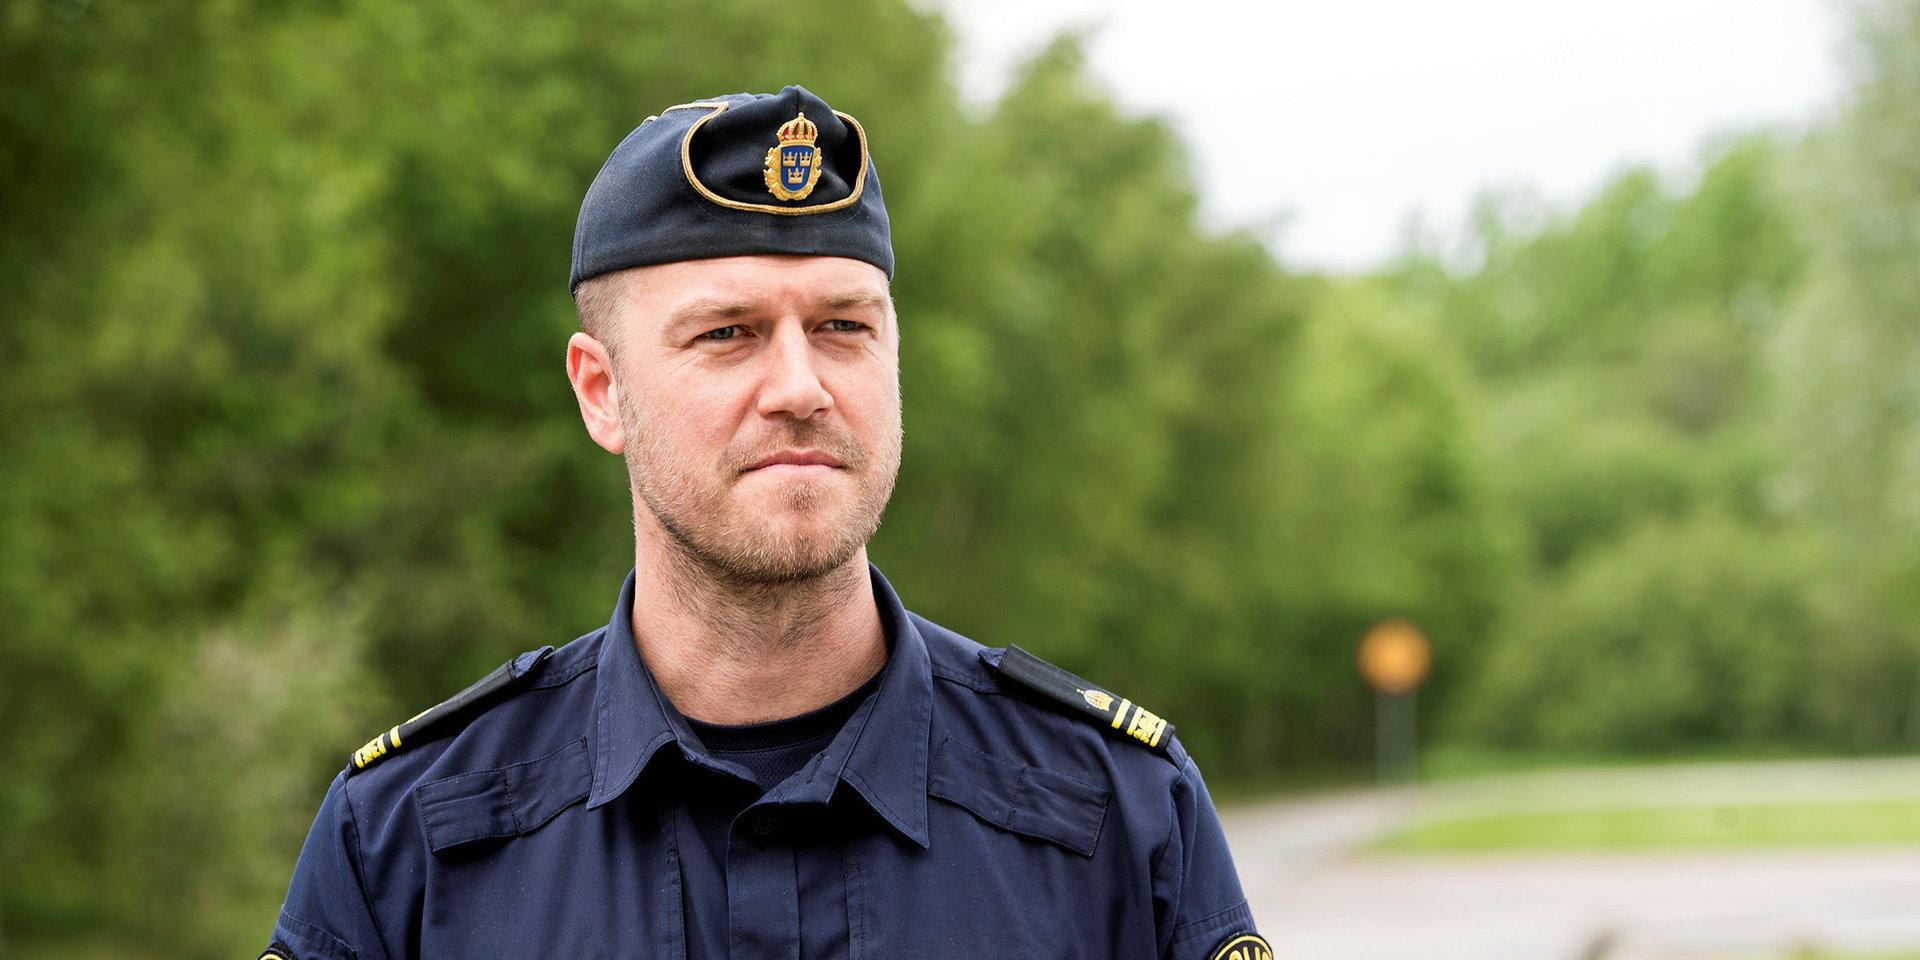 ”Sociala medier är ett väldigt bra verktyg för polisen”, säger stationsbefäl Anders Persson